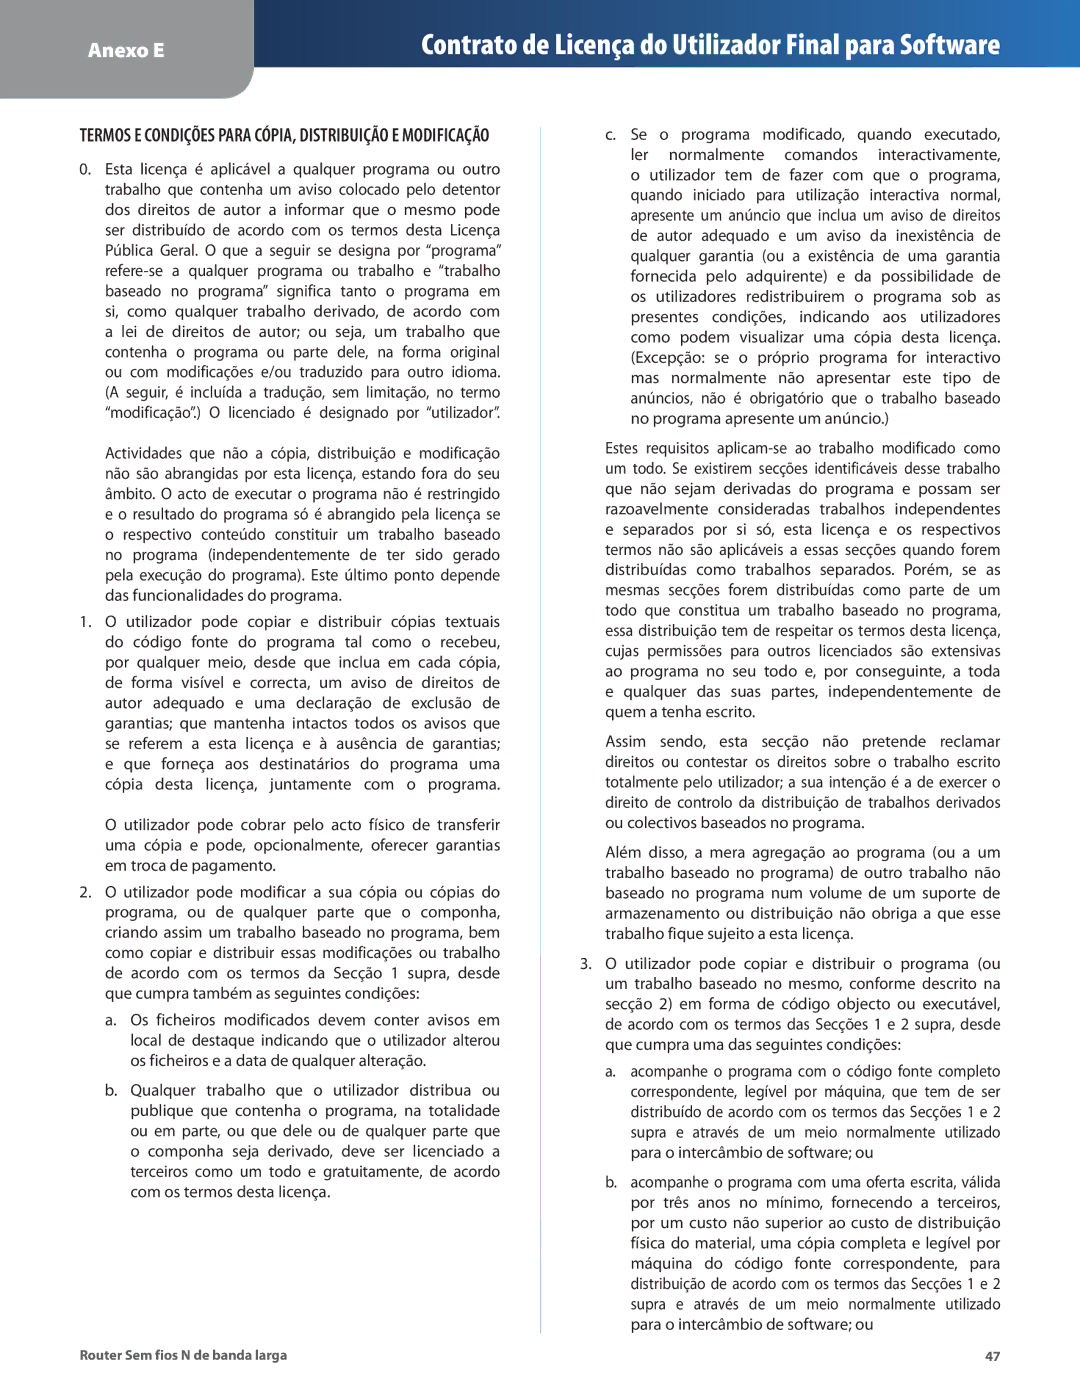 Linksys WRT160N manual Termos E Condições Para CÓPIA, Distribuição E Modificação 